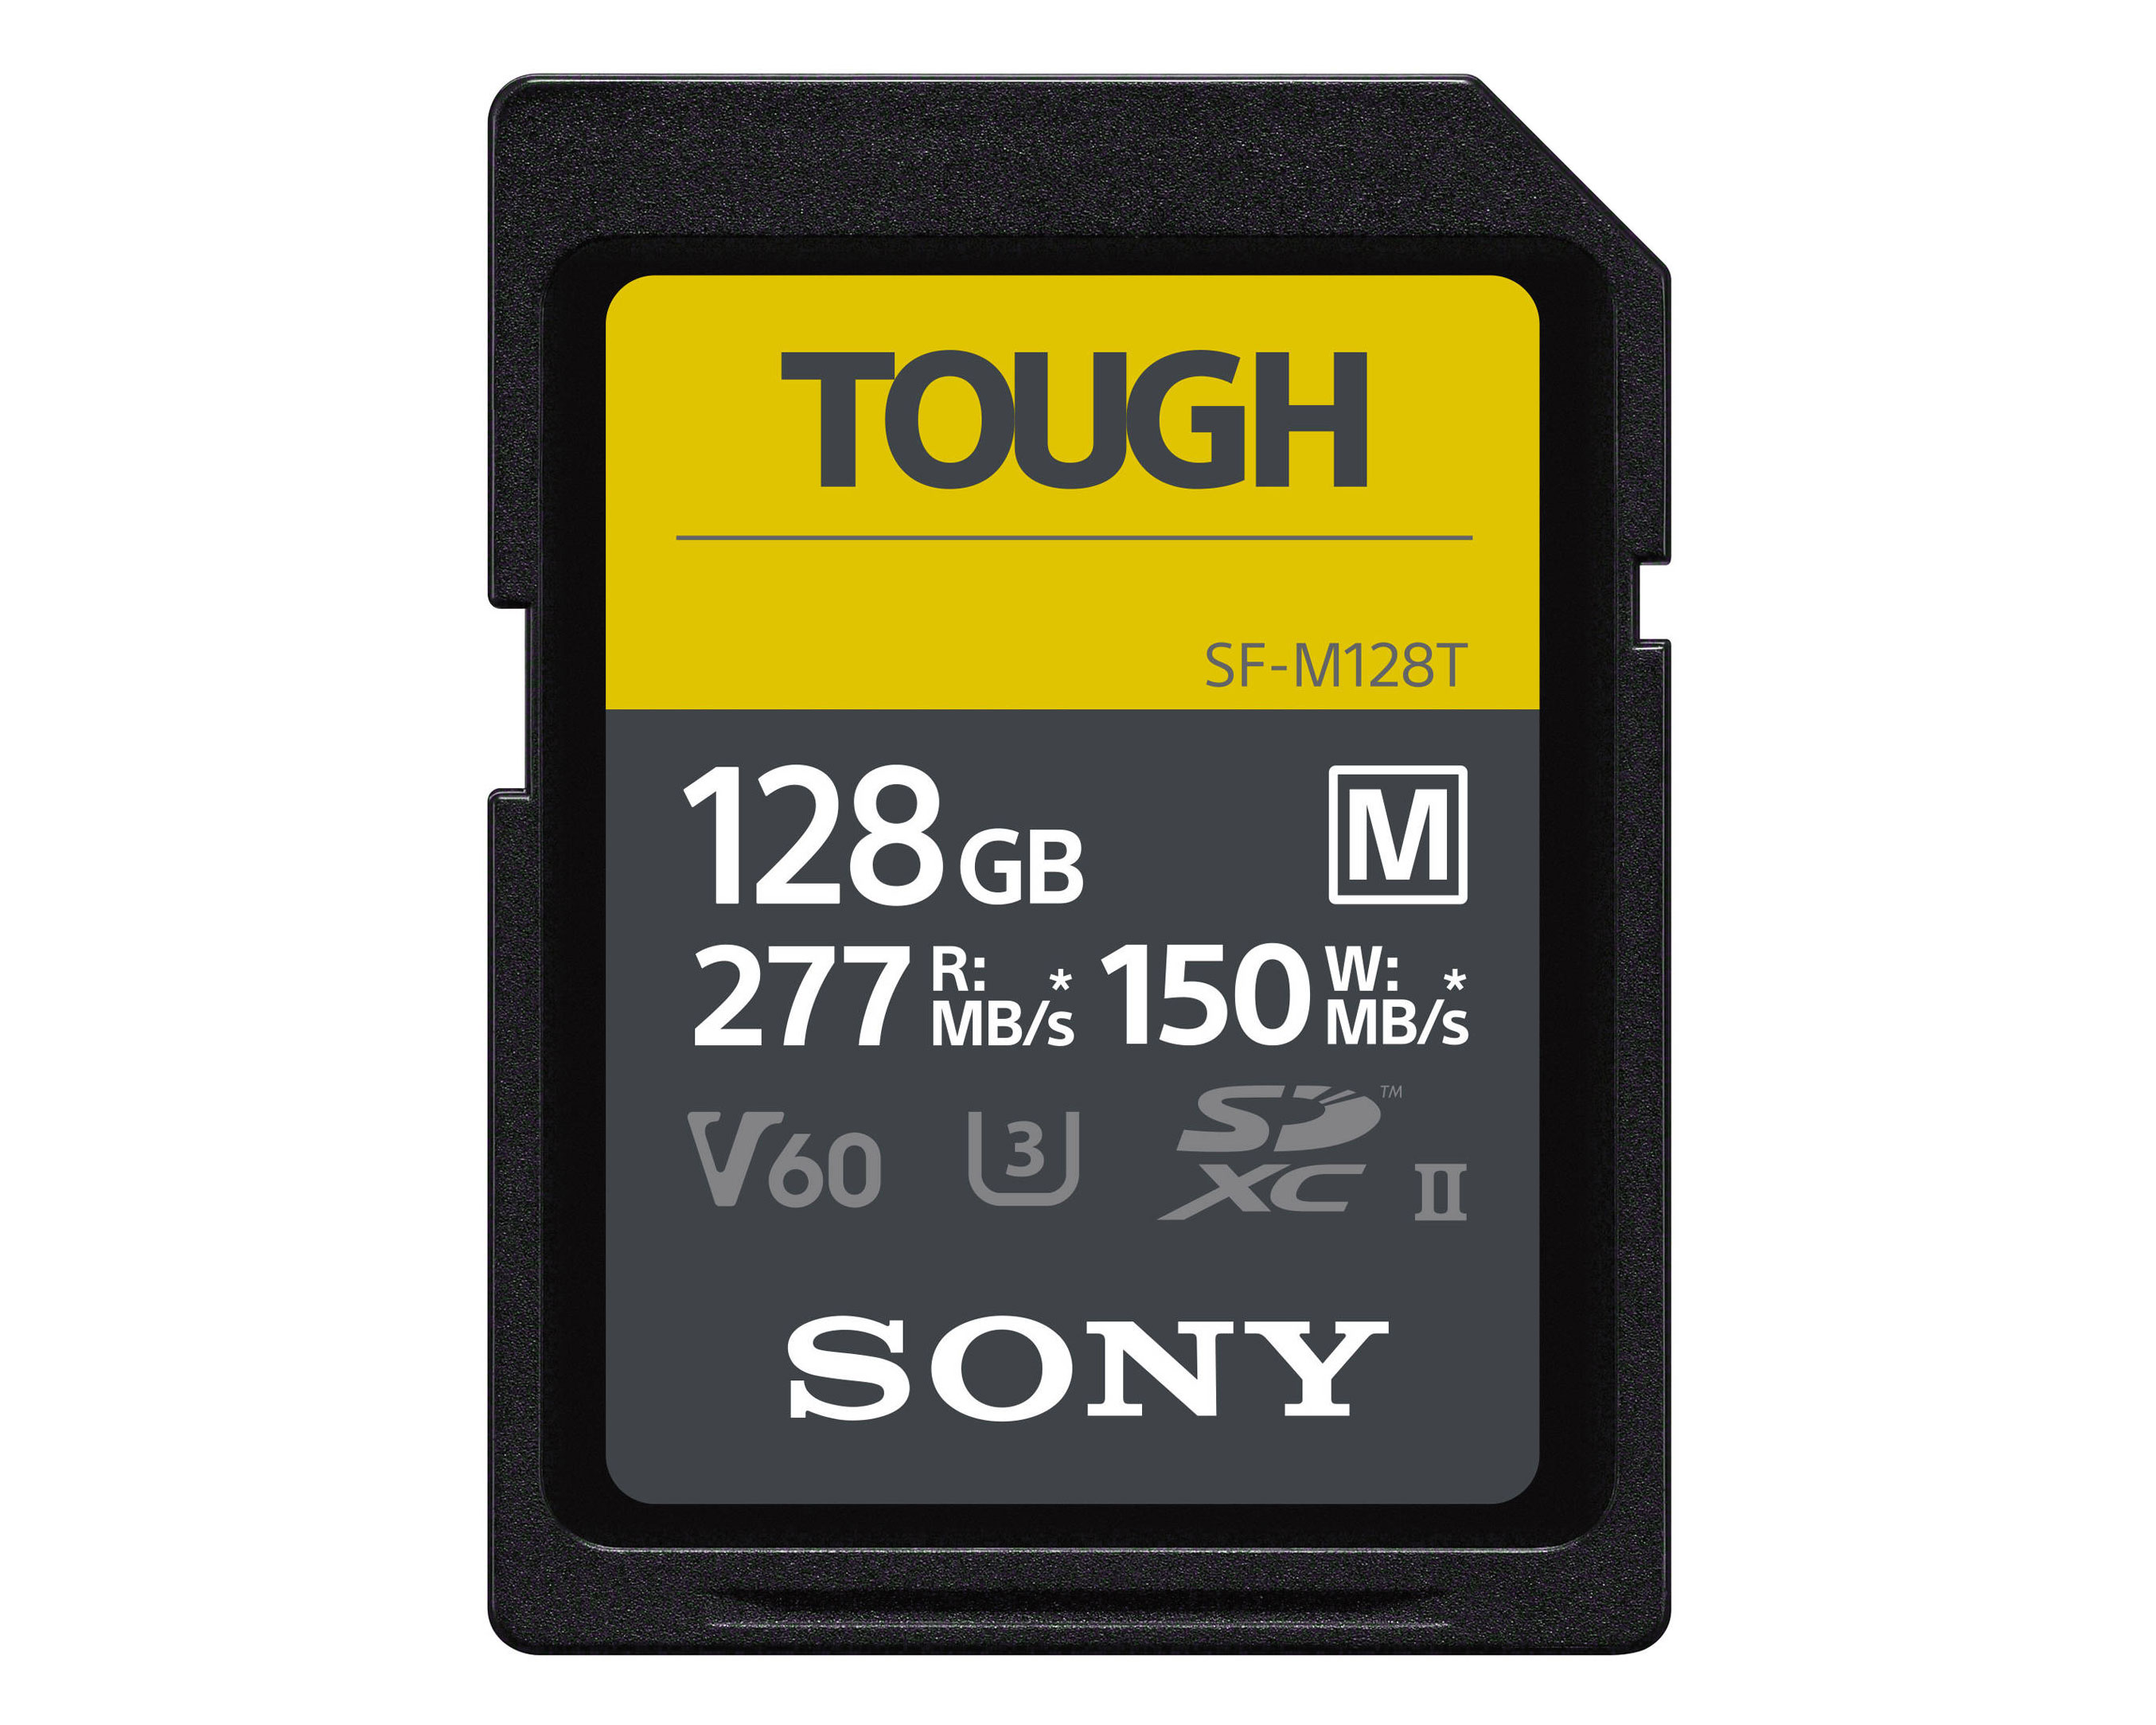 Sony SDXC Tough M 128GB